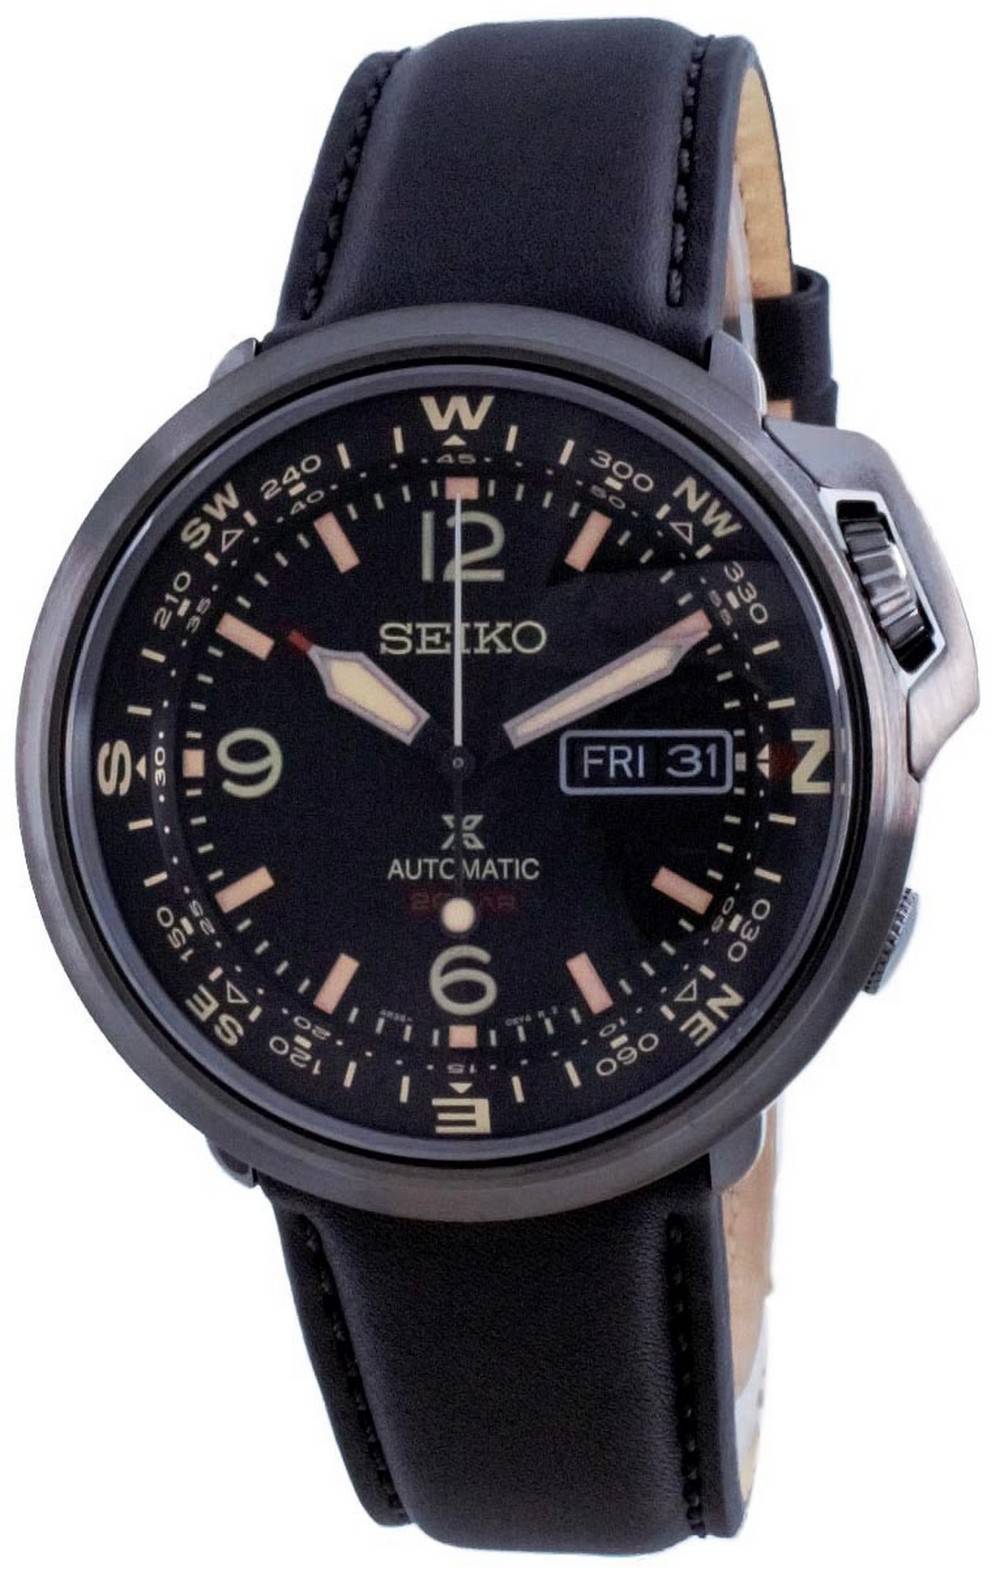 Đồng hồ nam Seiko Prospex Black Dial Automatic Diver's SRPD35 SRPD35K1  SRPD35K 200M vi